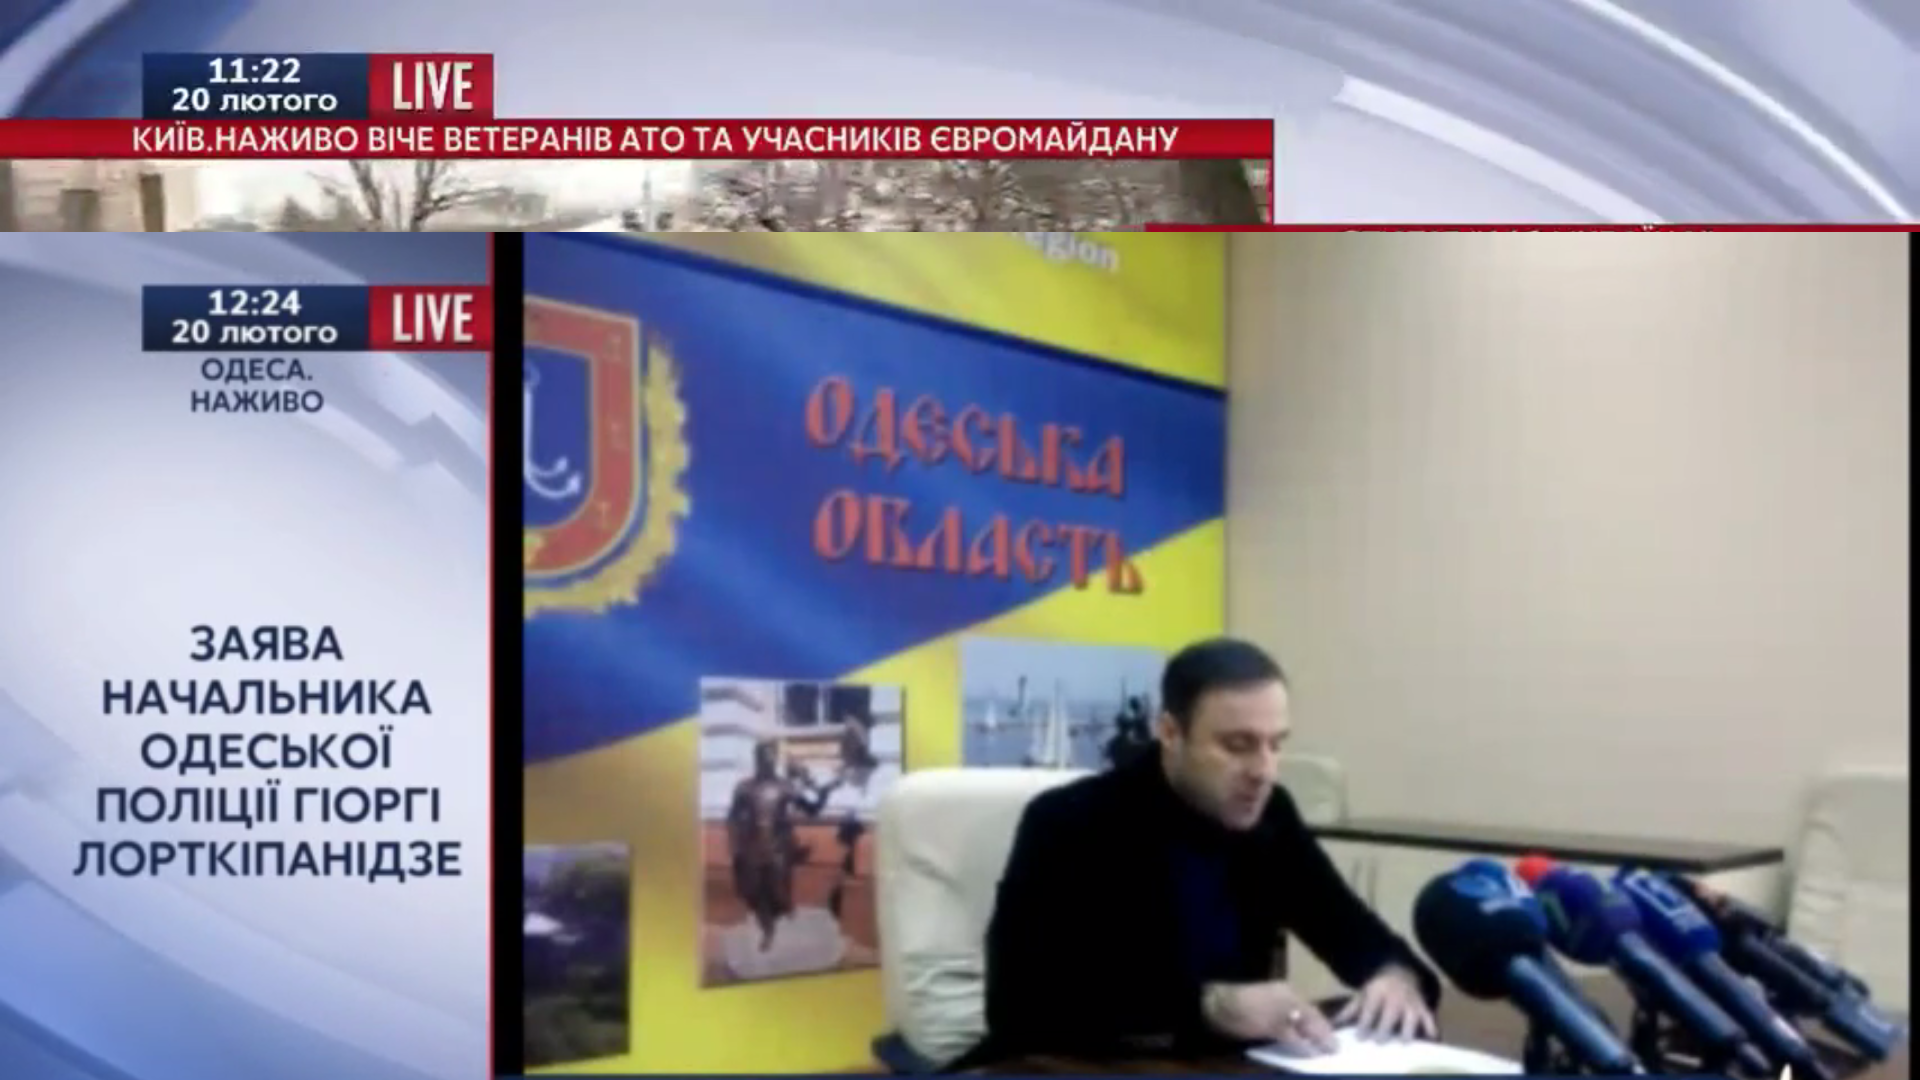 Глава Одесской полиции Гиорги Лорткипанидзе заявил о давлении